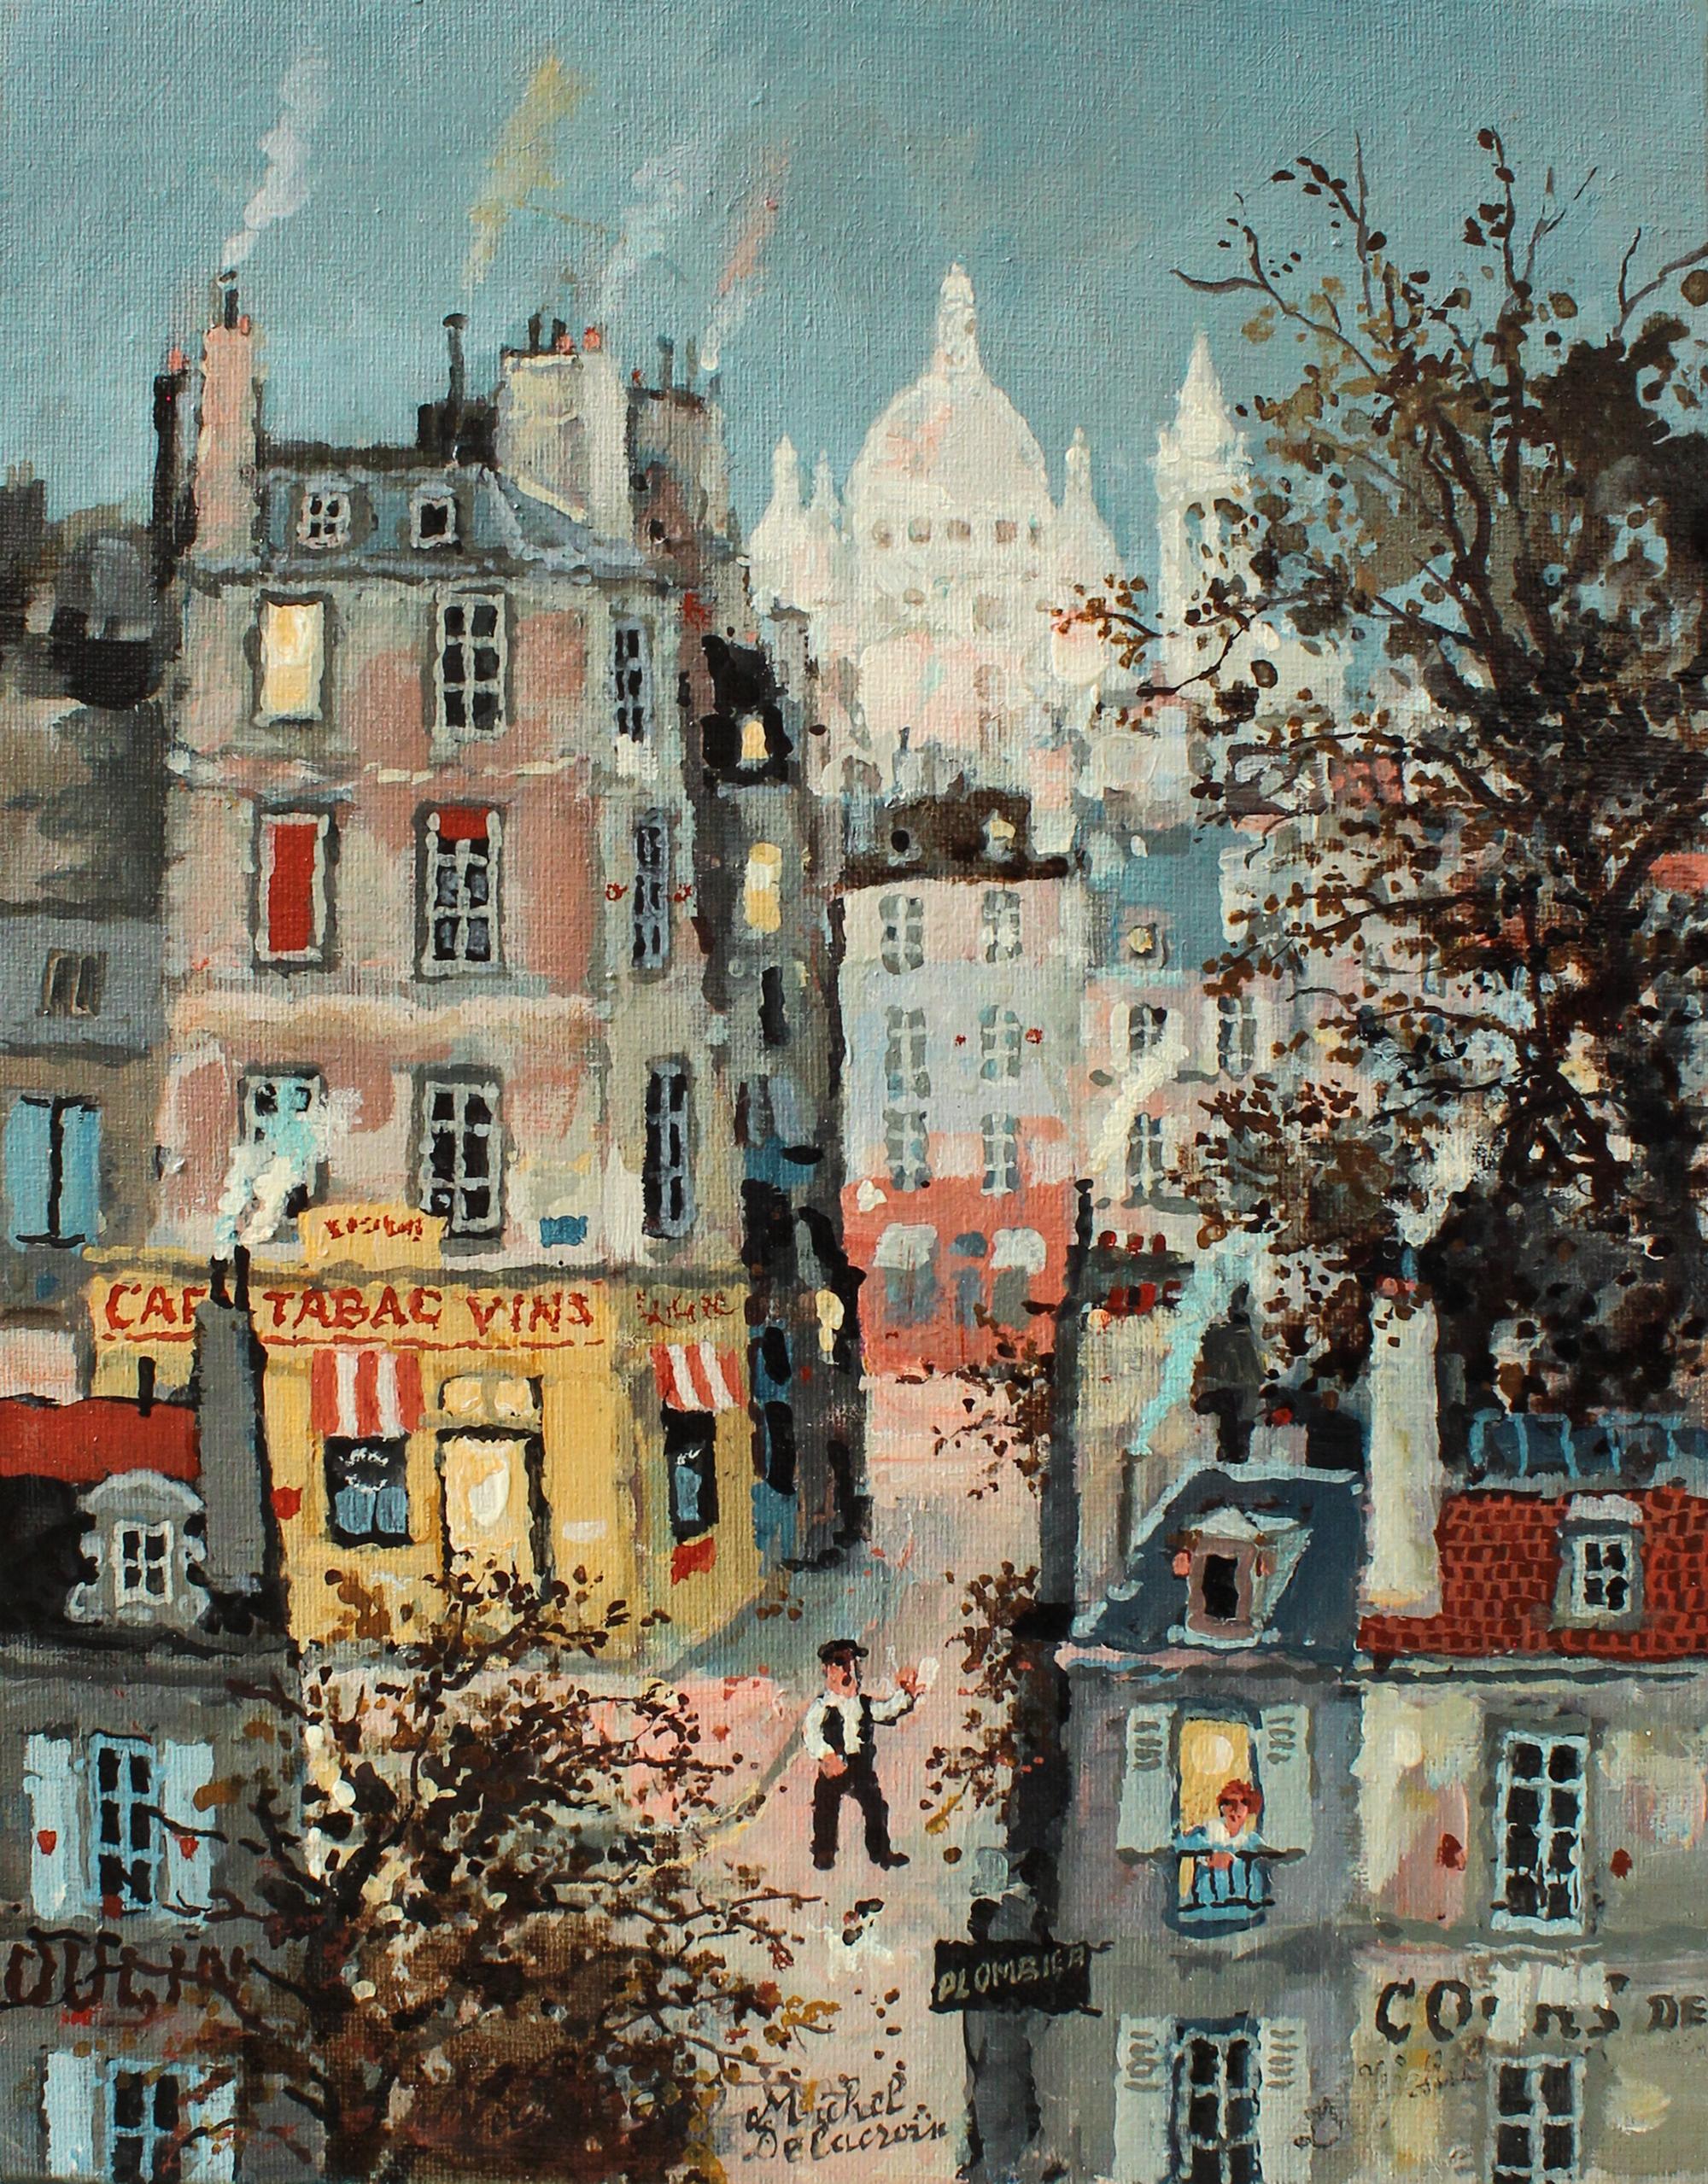 La romance de Montmartre  - Painting by Michel Delacroix